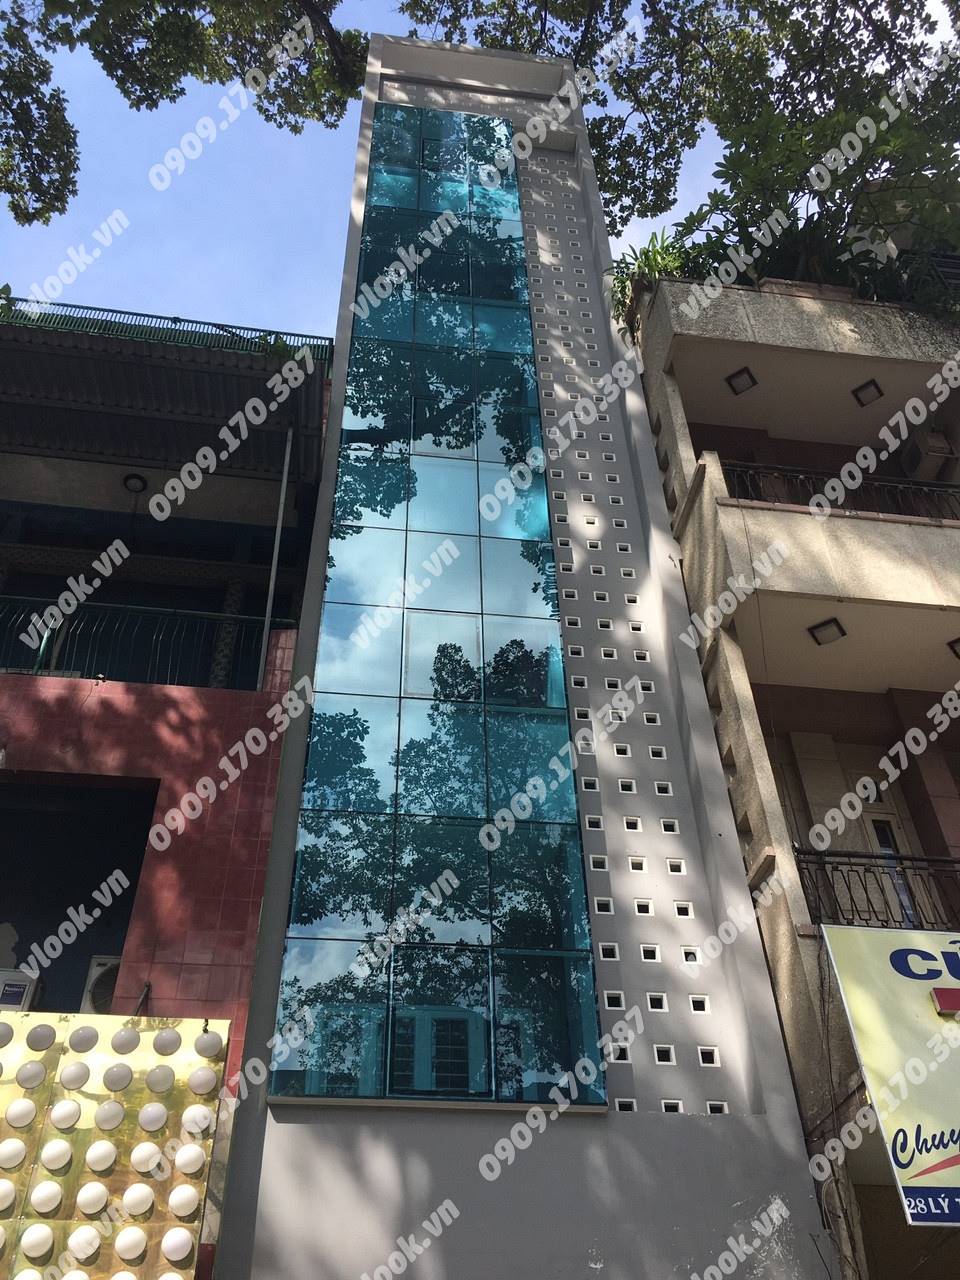 Cao ốc cho thuê văn phòng BM Building, Lý Thường Kiệt, Quận 10, TPHCM - vlook.vn